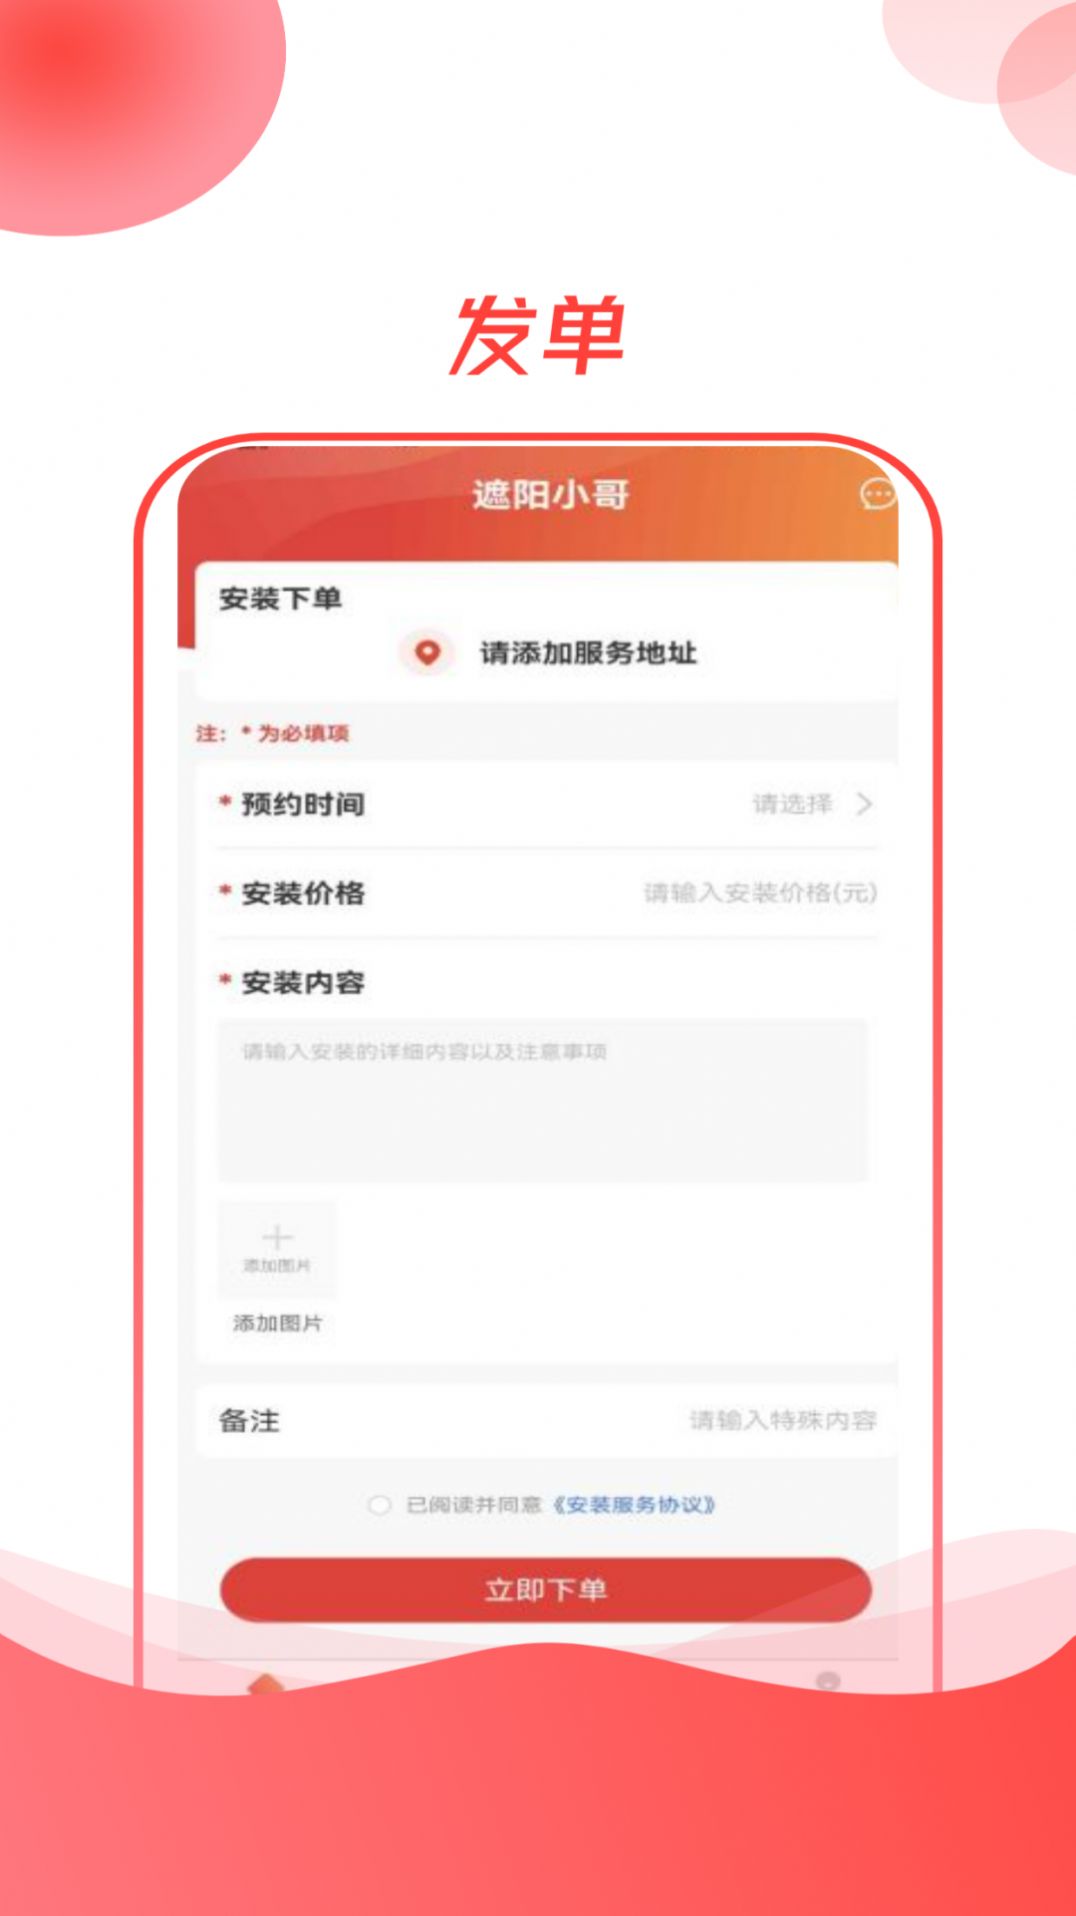 遮阳小哥app下载,遮阳小哥app官方版 v1.0.4